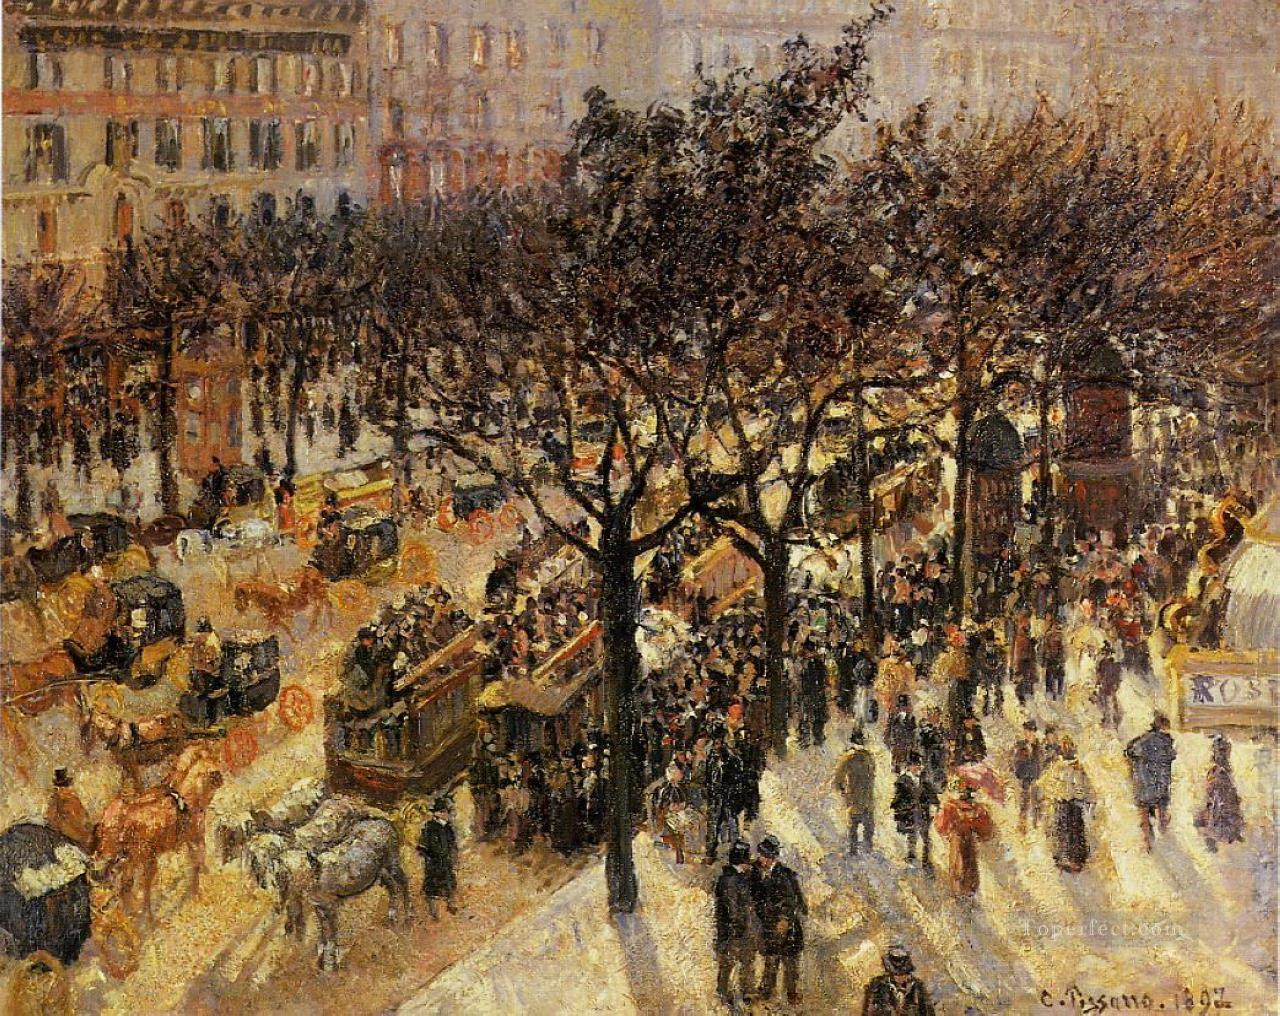 イタリア大通りの午後 1897年 カミーユ・ピサロ油絵